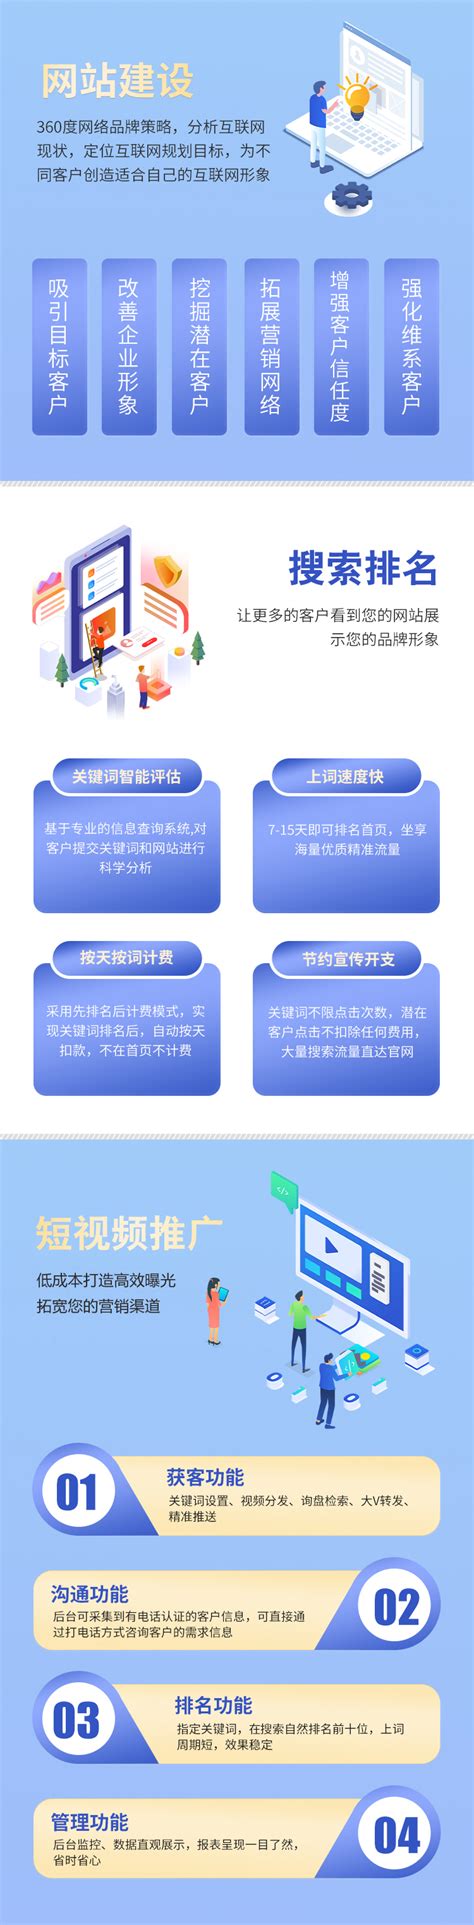 浙江网站推广免费服务